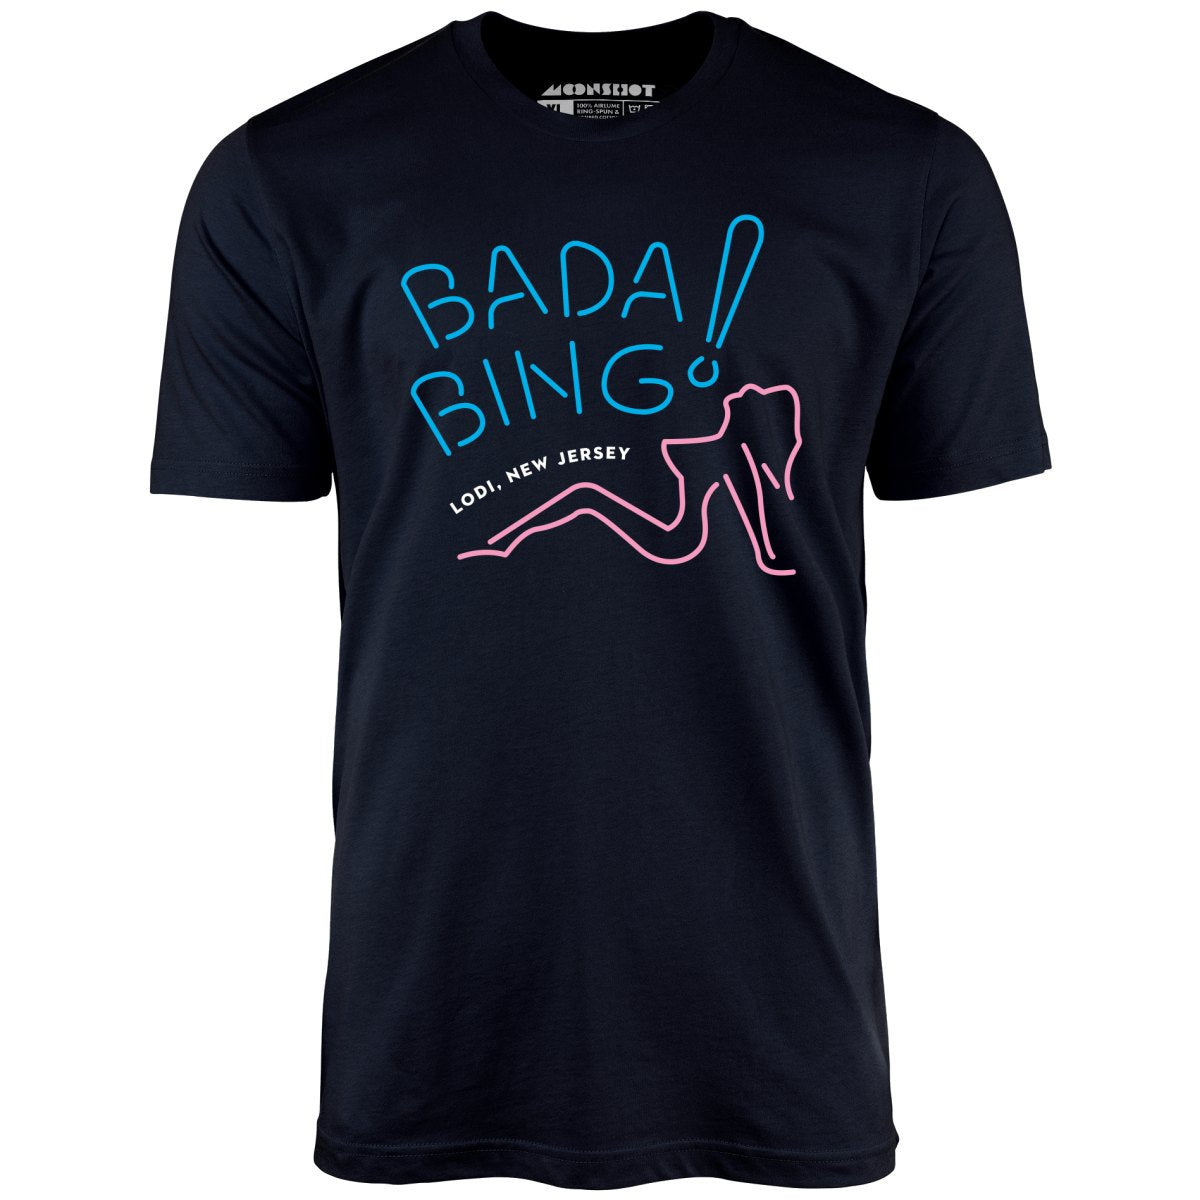 Bada Bing - The Sopranos - Unisex T-Shirt